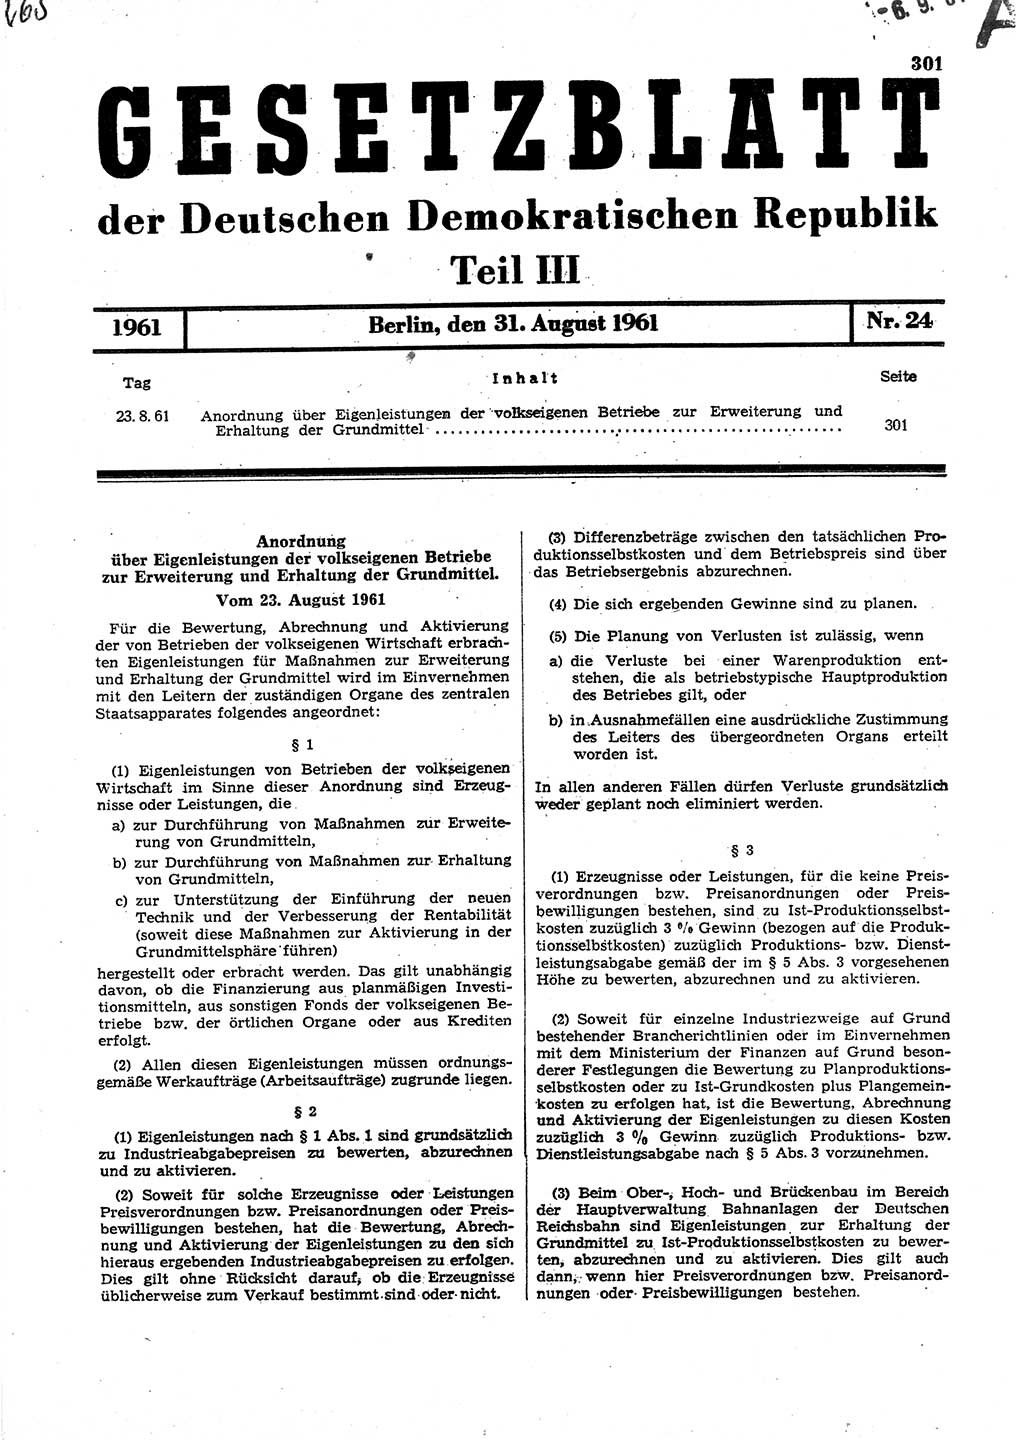 Gesetzblatt (GBl.) der Deutschen Demokratischen Republik (DDR) Teil ⅠⅠⅠ 1961, Seite 301 (GBl. DDR ⅠⅠⅠ 1961, S. 301)